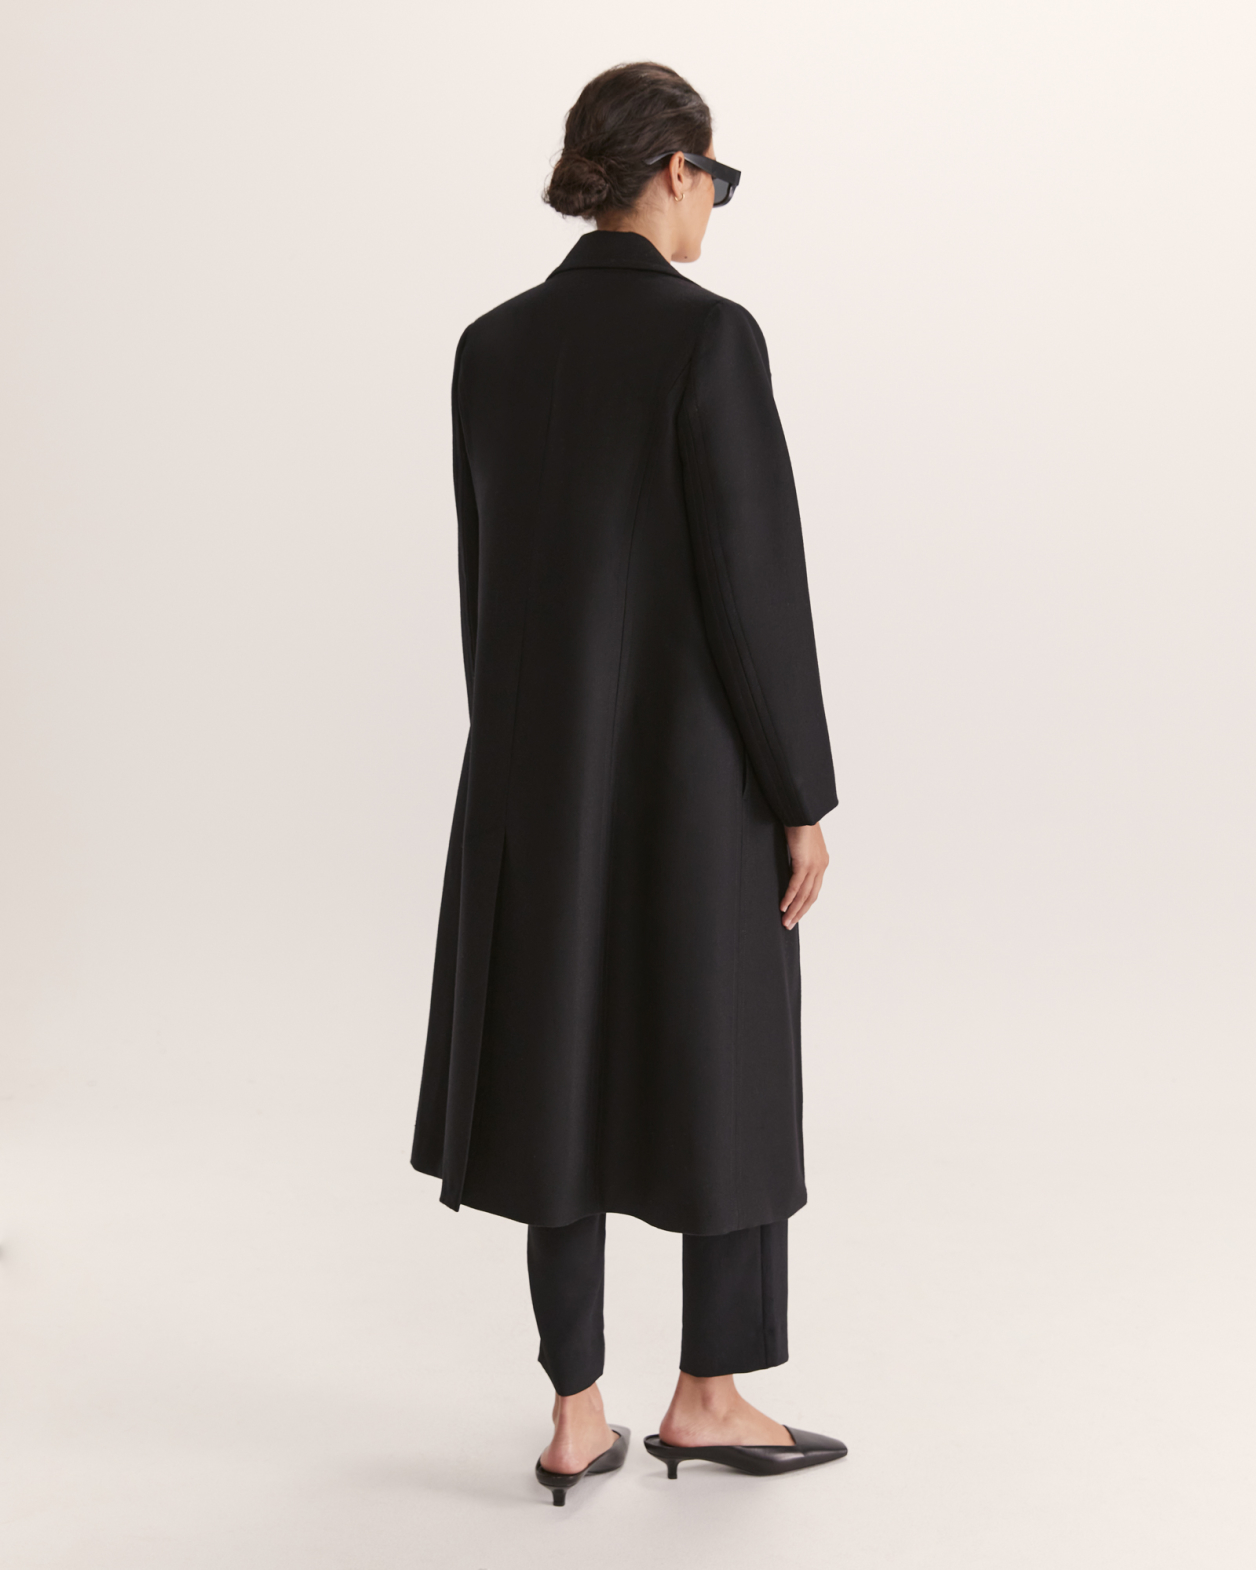 Prudence Long Coat in BLACK